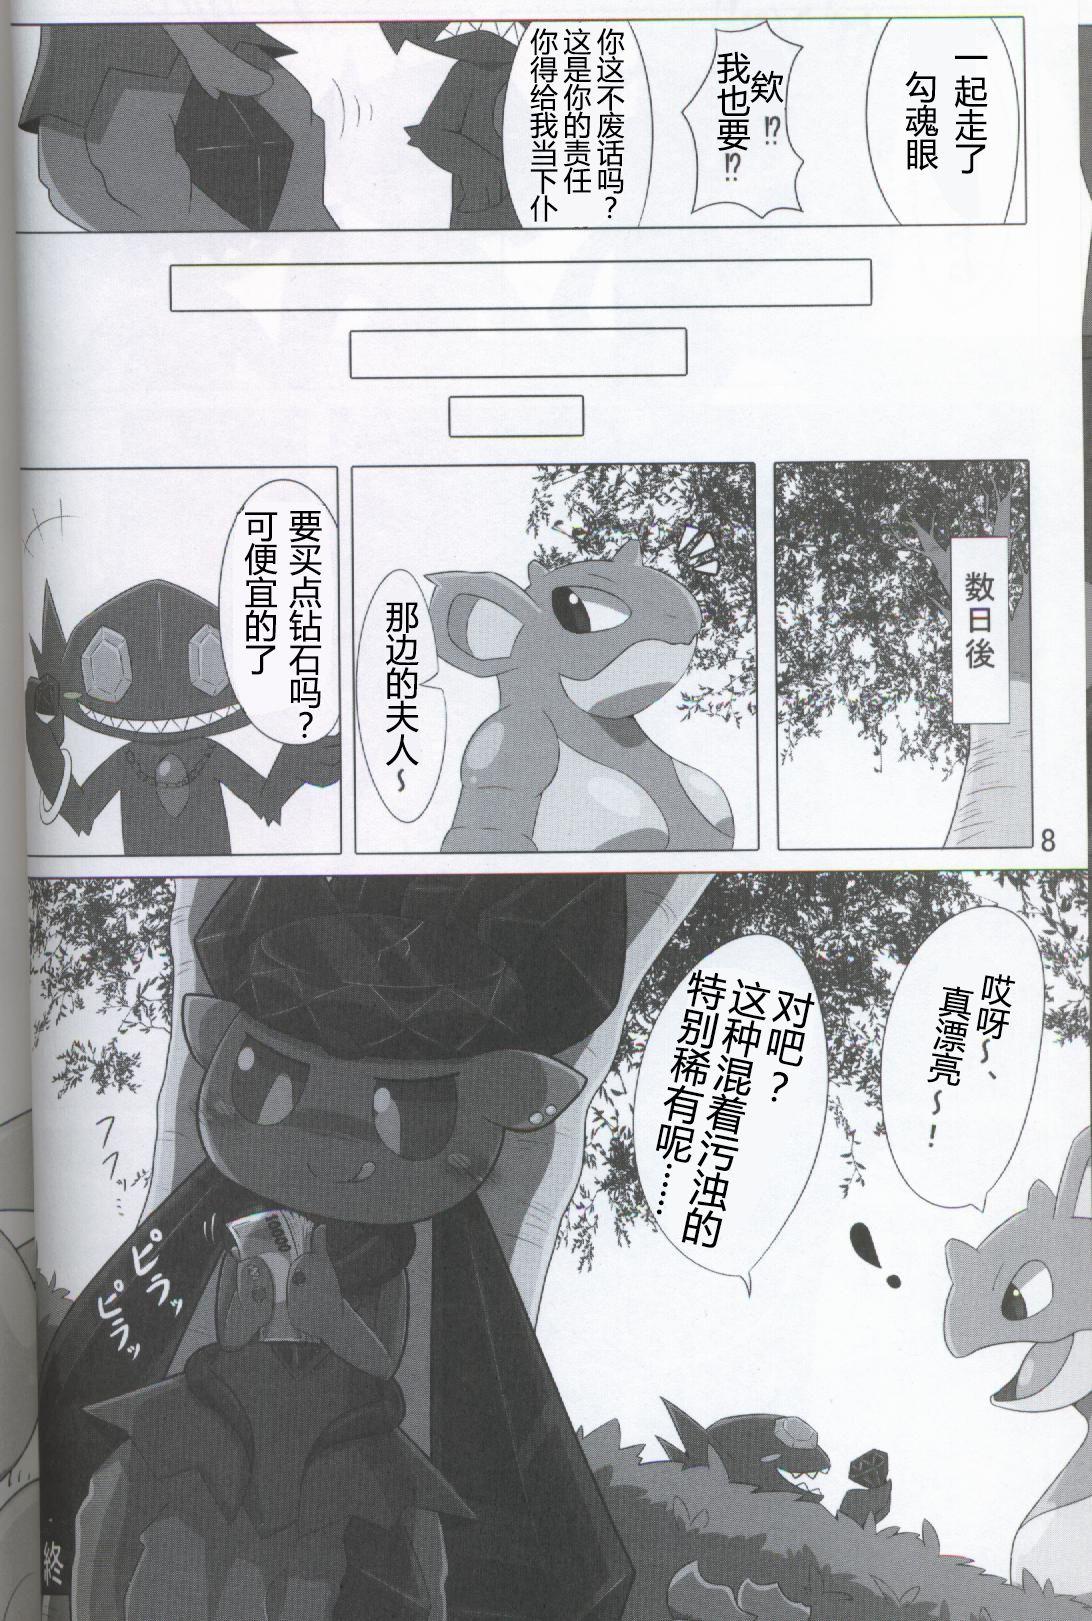 Spycam Pokéda | 宝可堕 - Pokemon Stepbrother - Page 9